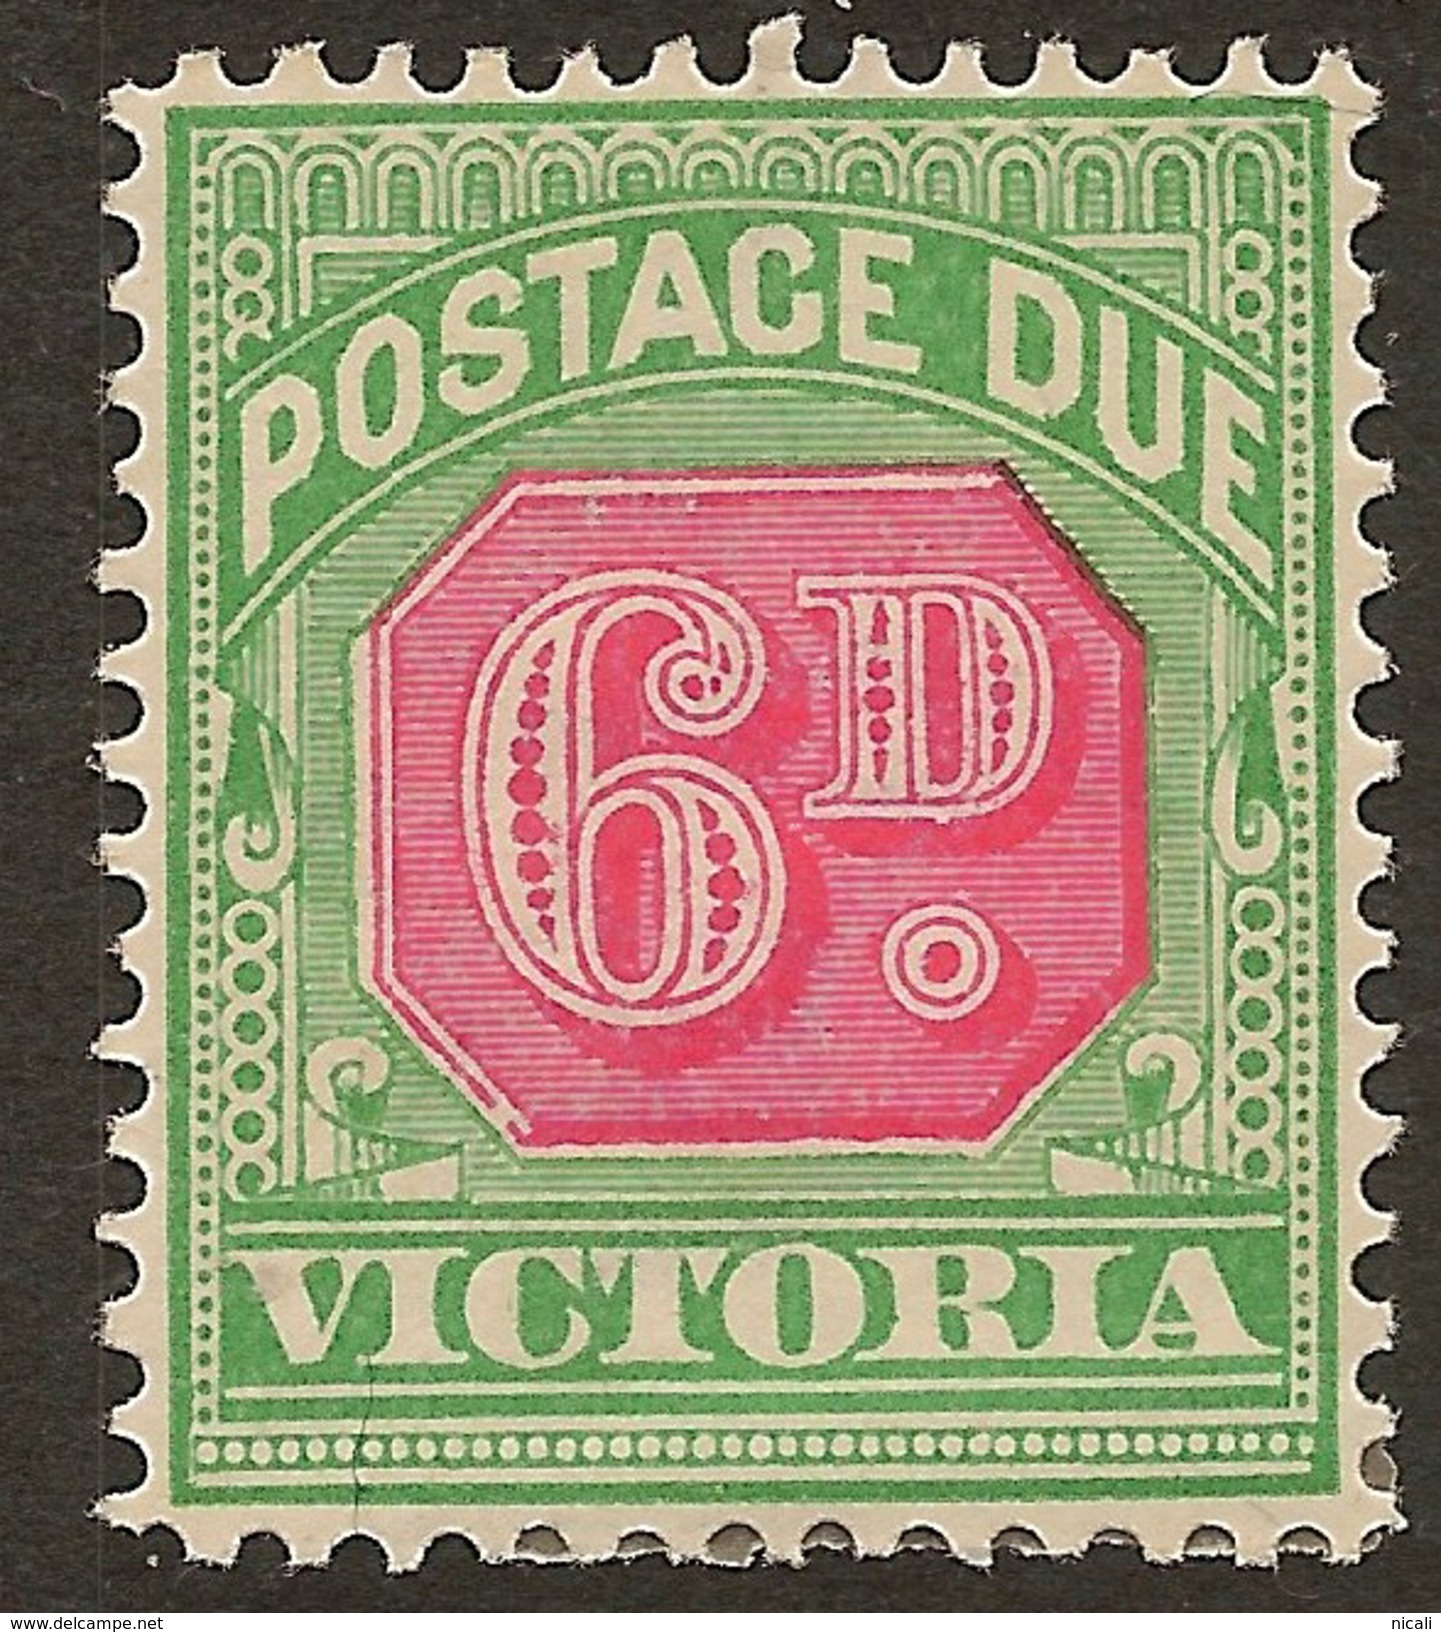 VICTORIA 1895 6d Postage Due SG D16 HM #ABI331 - Mint Stamps